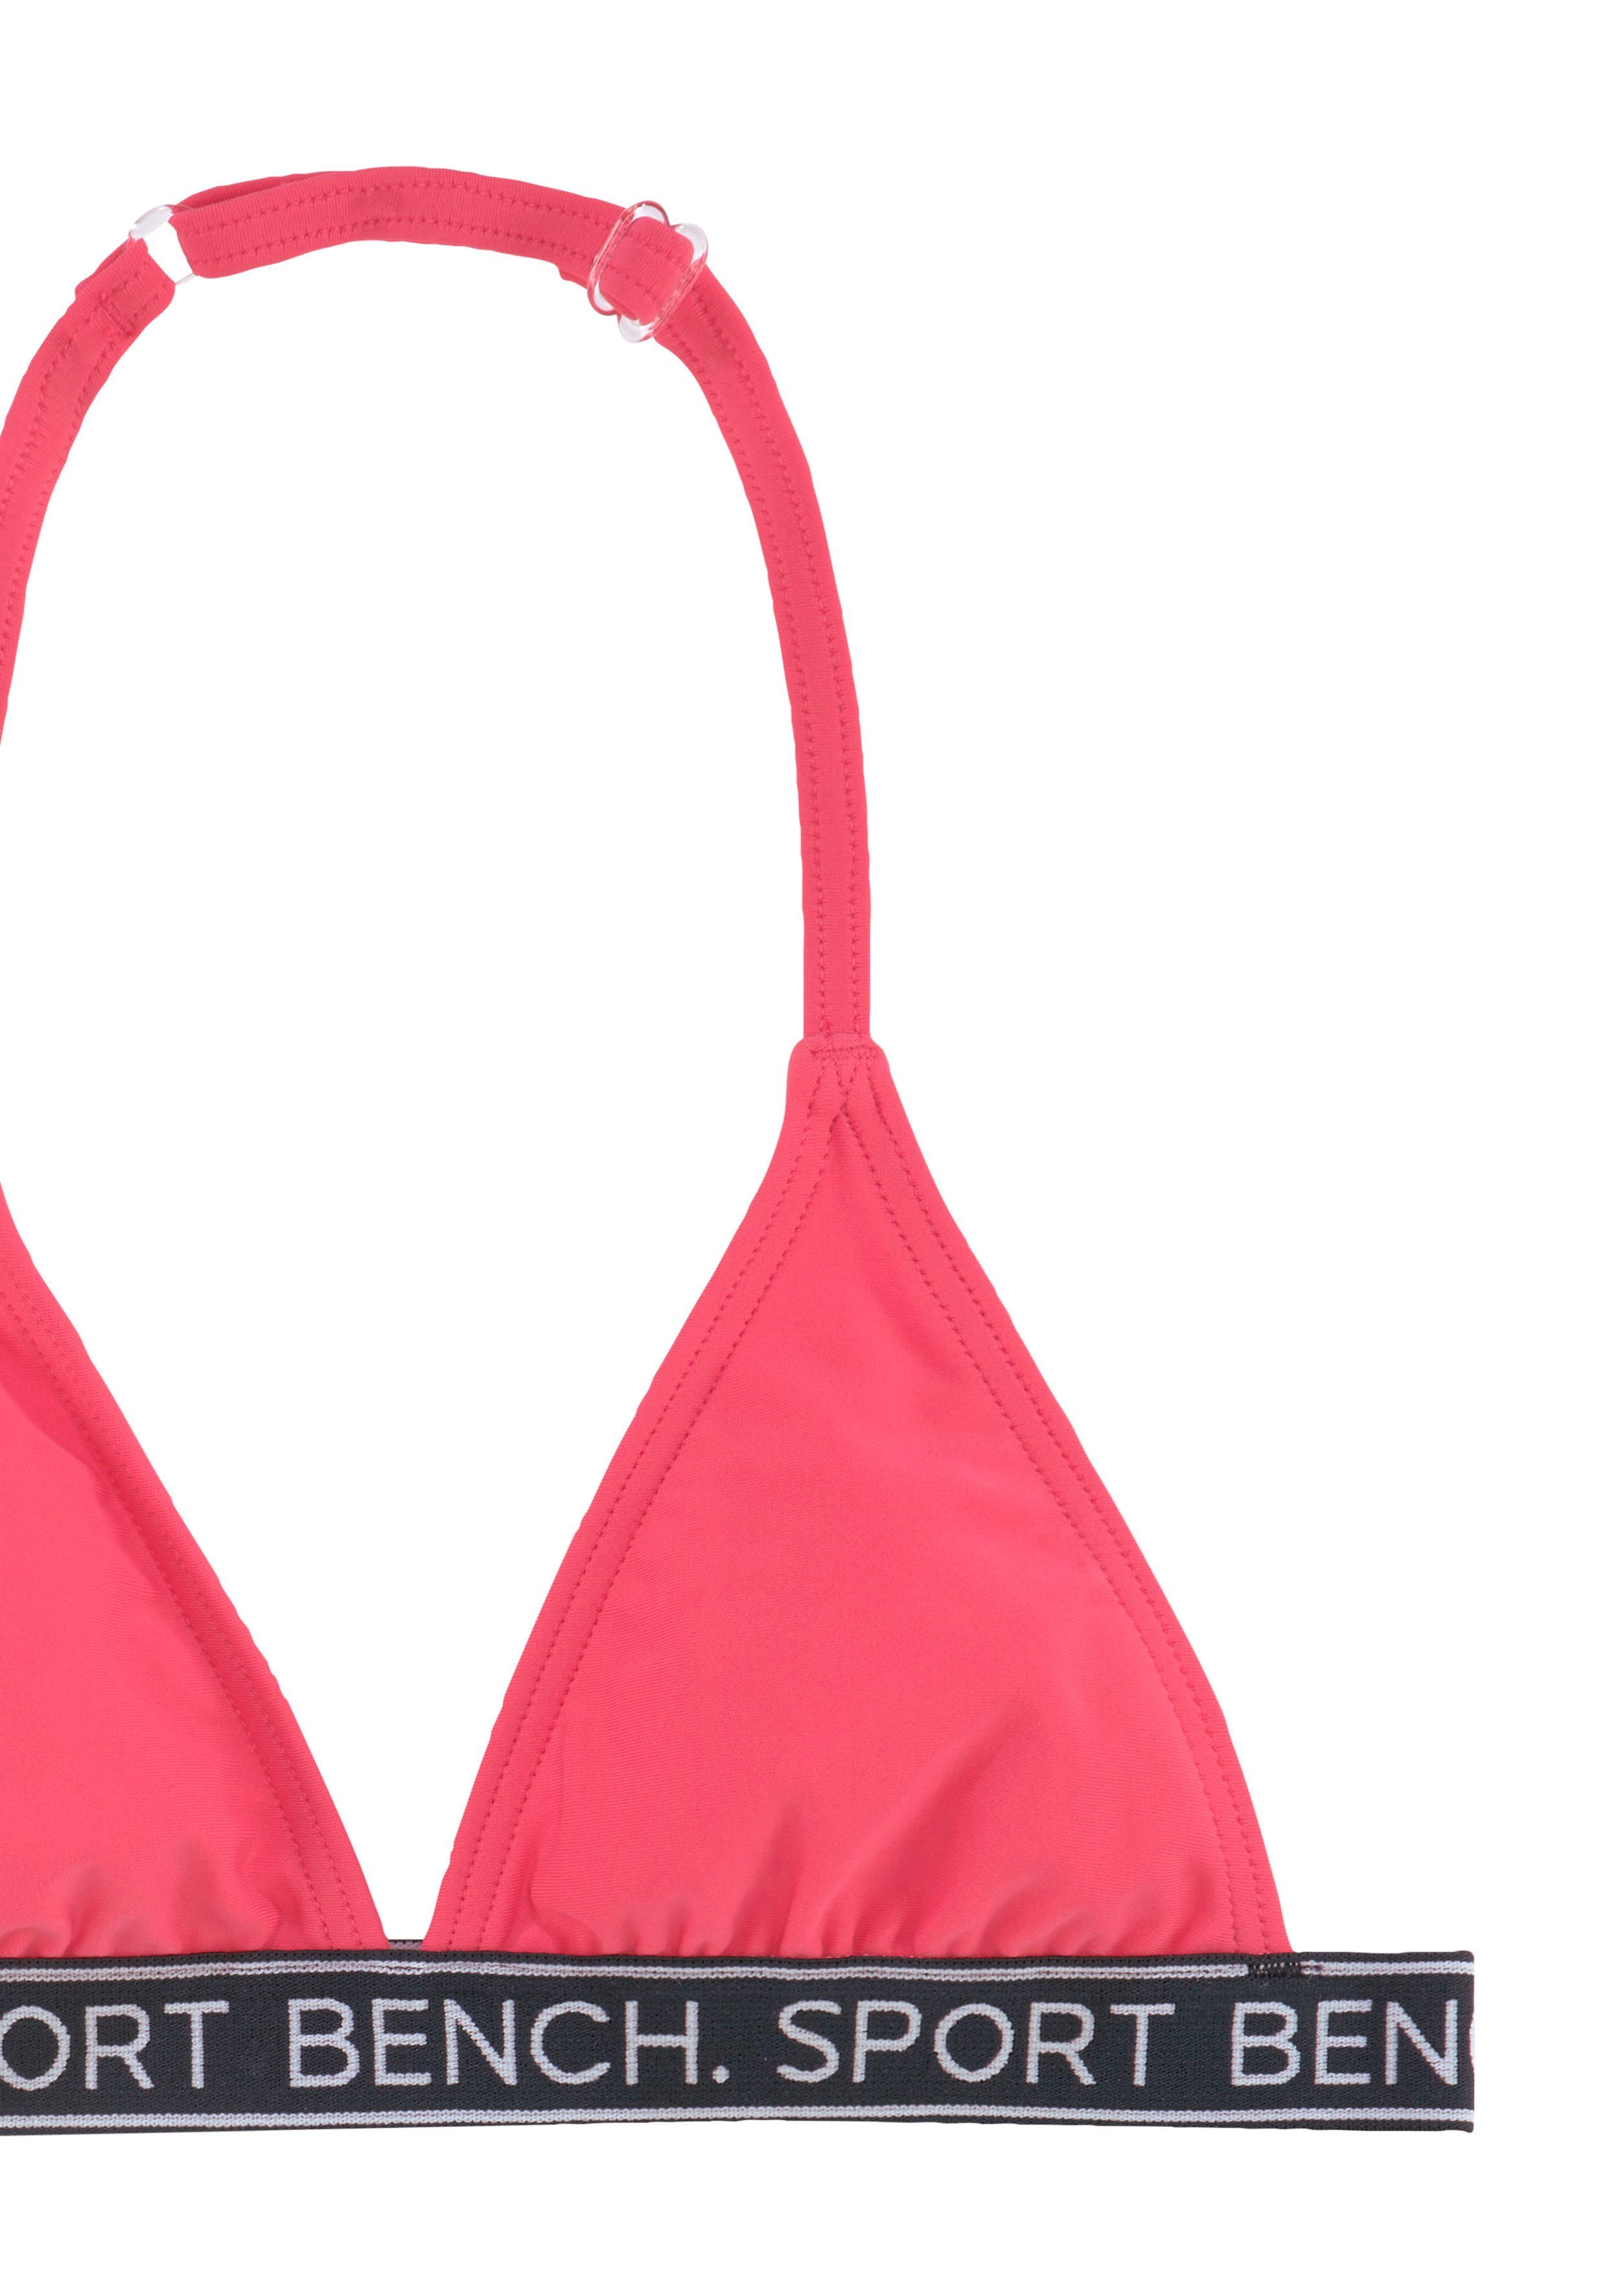 und Triangel-Bikini in Design Bench. Yva Farben Kids pink sportlichem